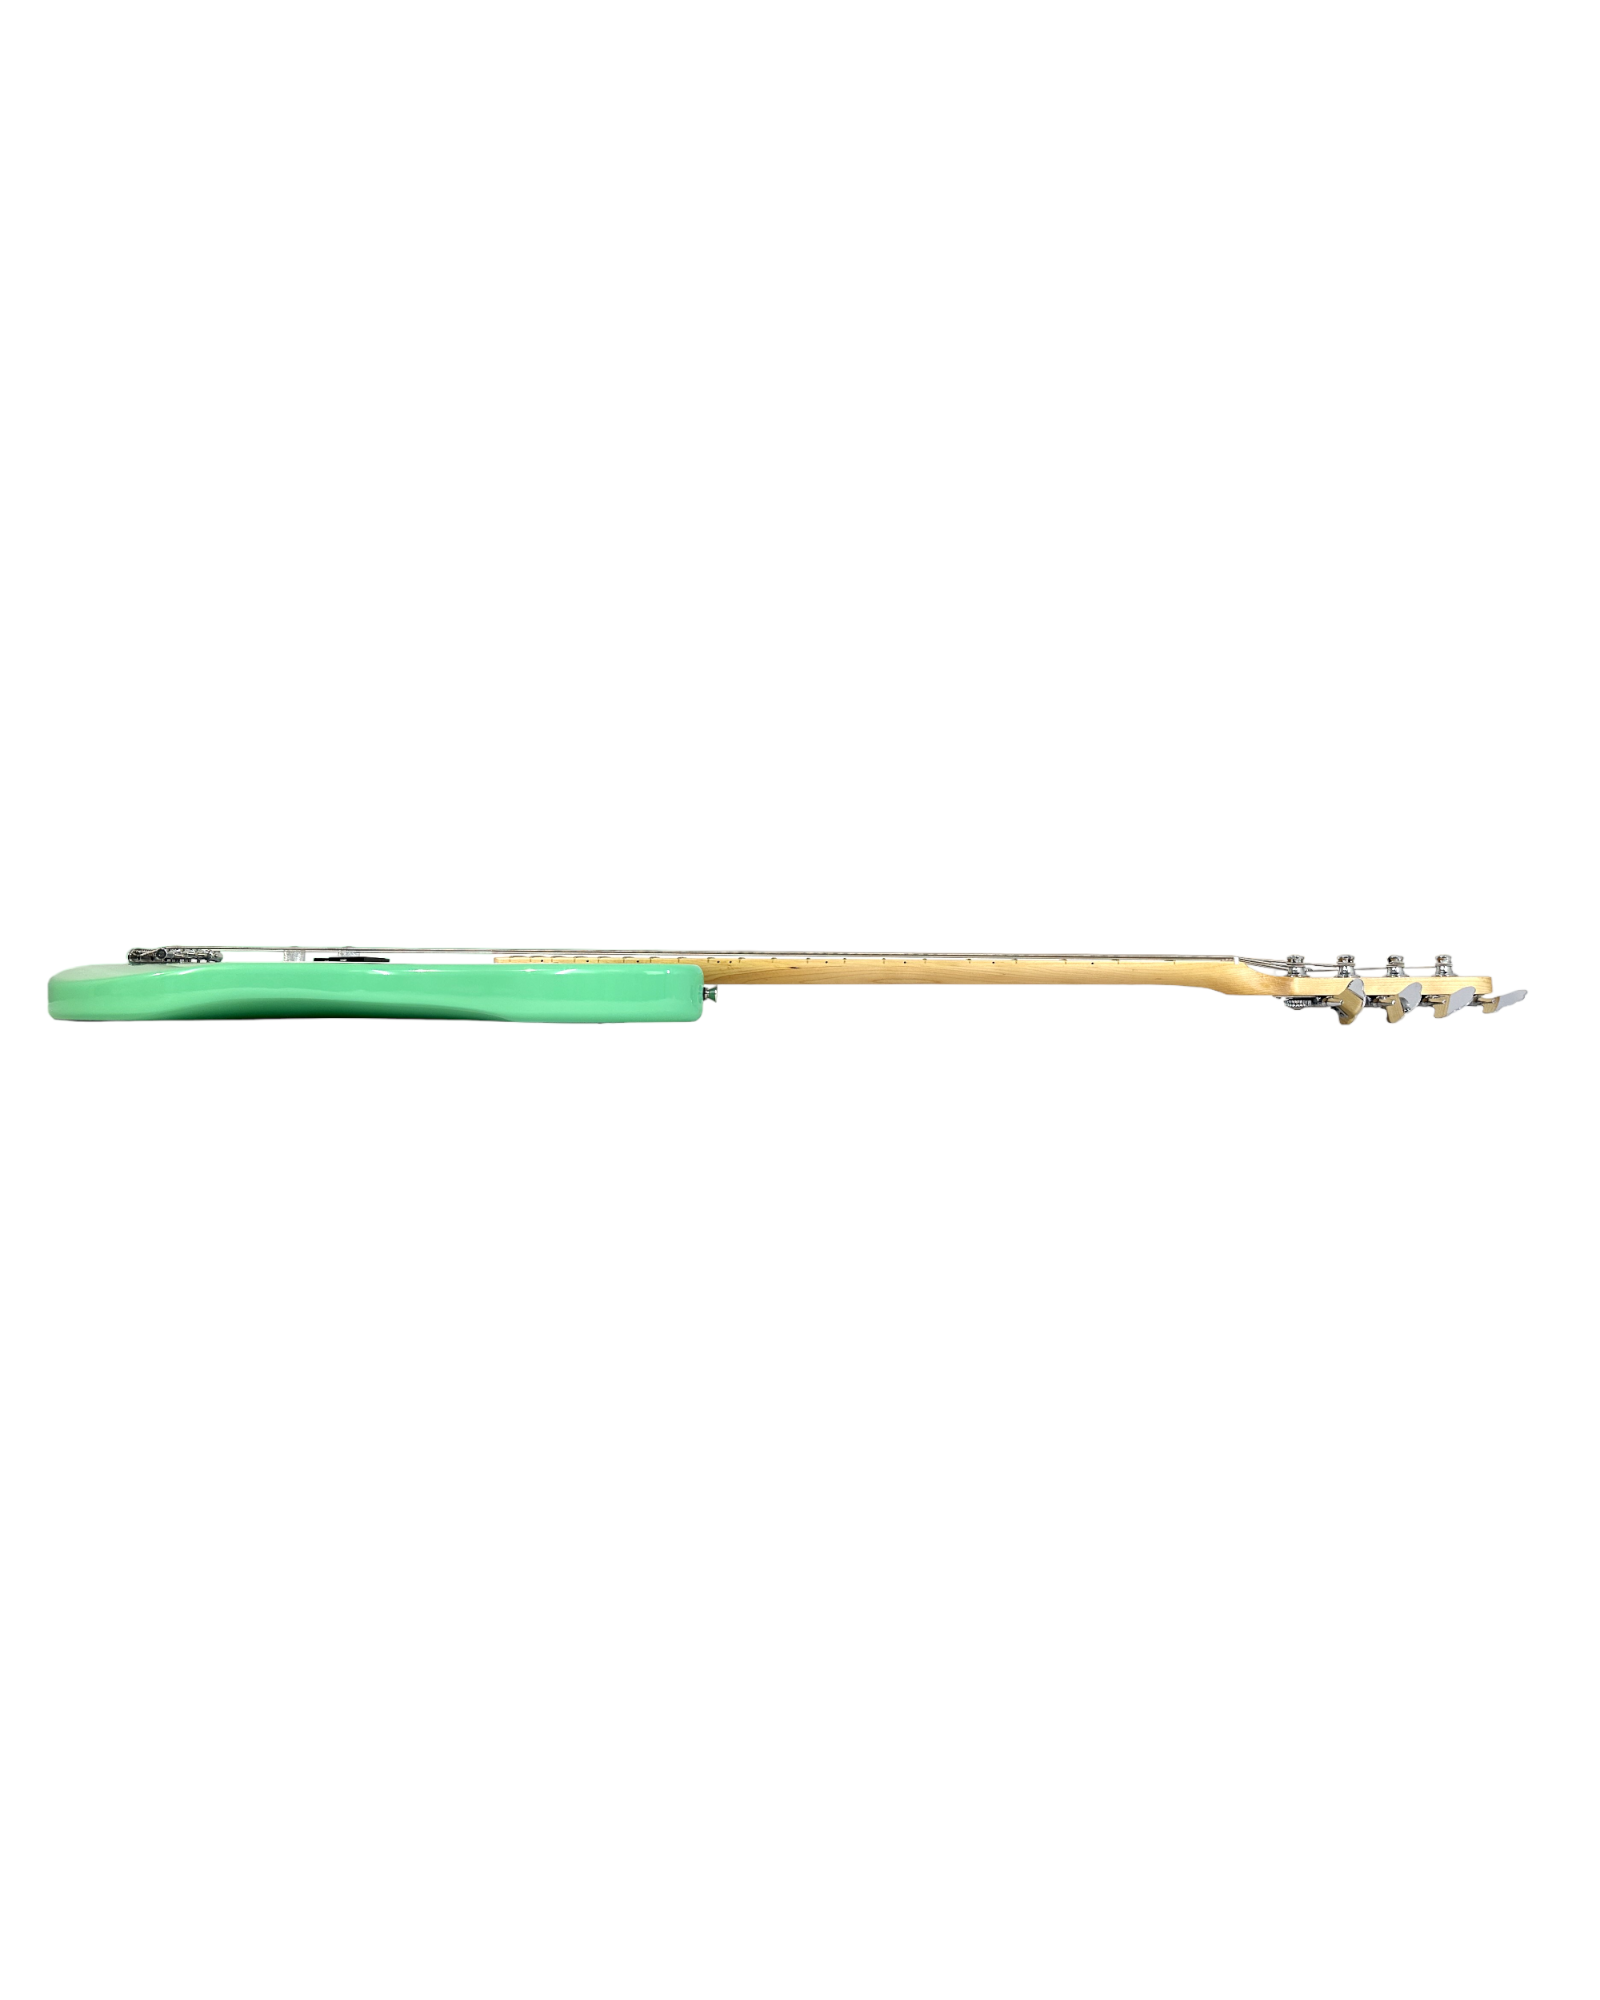 Haze Left Handed Basswood Seafoam Green Electric Bass Guitar - Surf Green STPB172GNLH